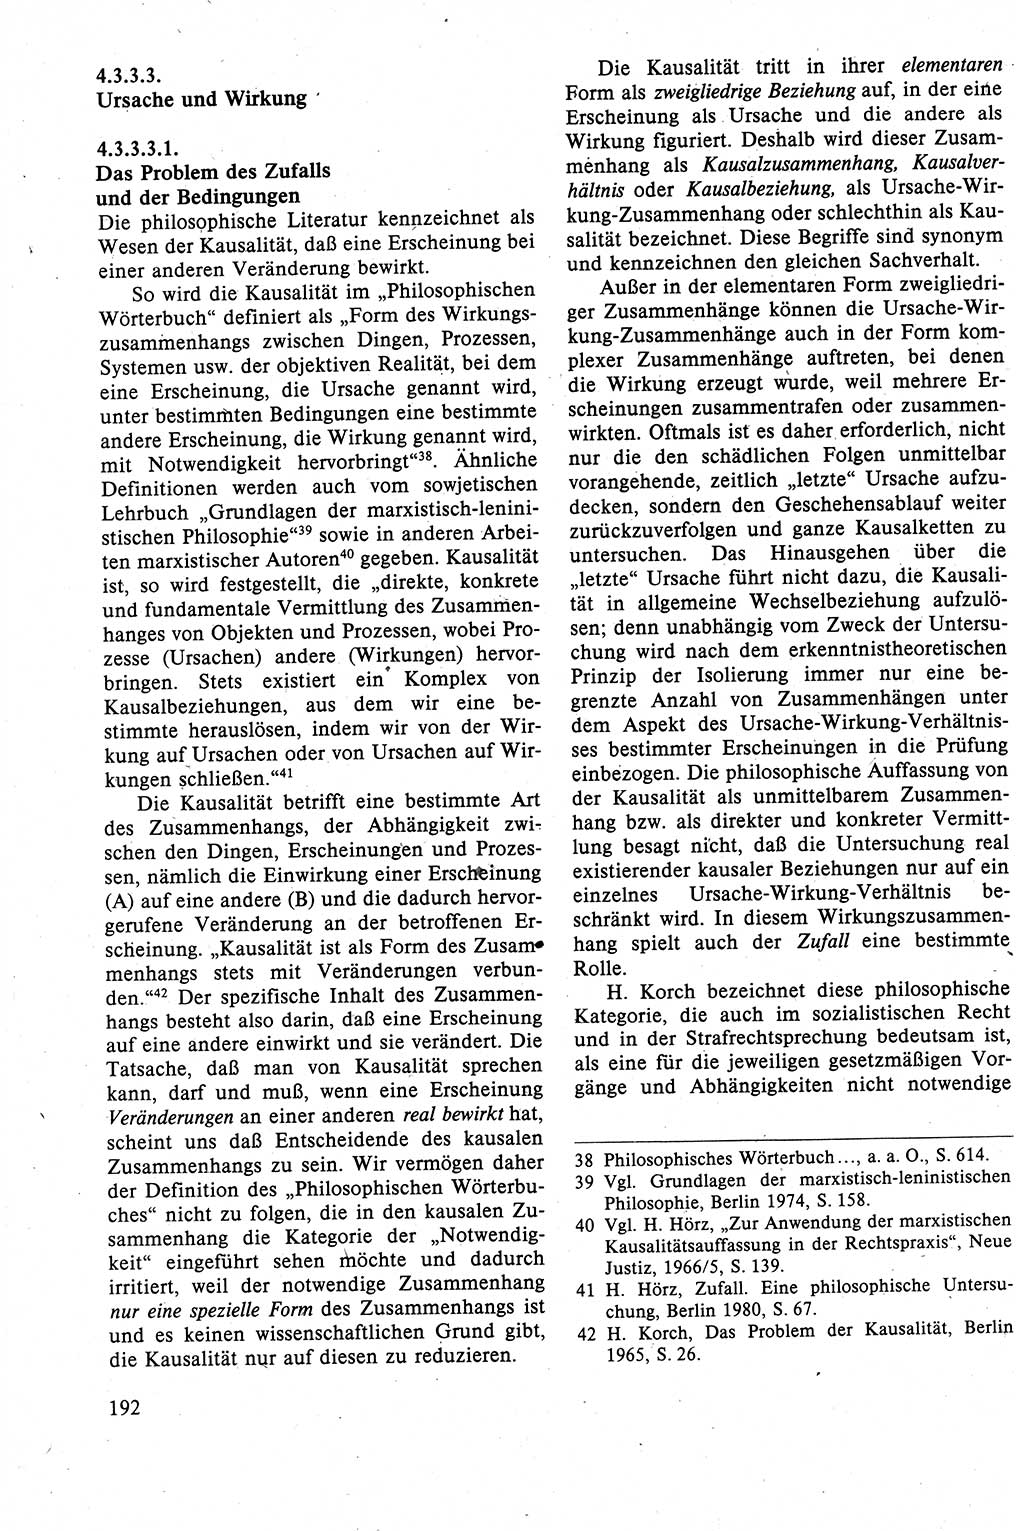 Strafrecht der DDR (Deutsche Demokratische Republik), Lehrbuch 1988, Seite 192 (Strafr. DDR Lb. 1988, S. 192)